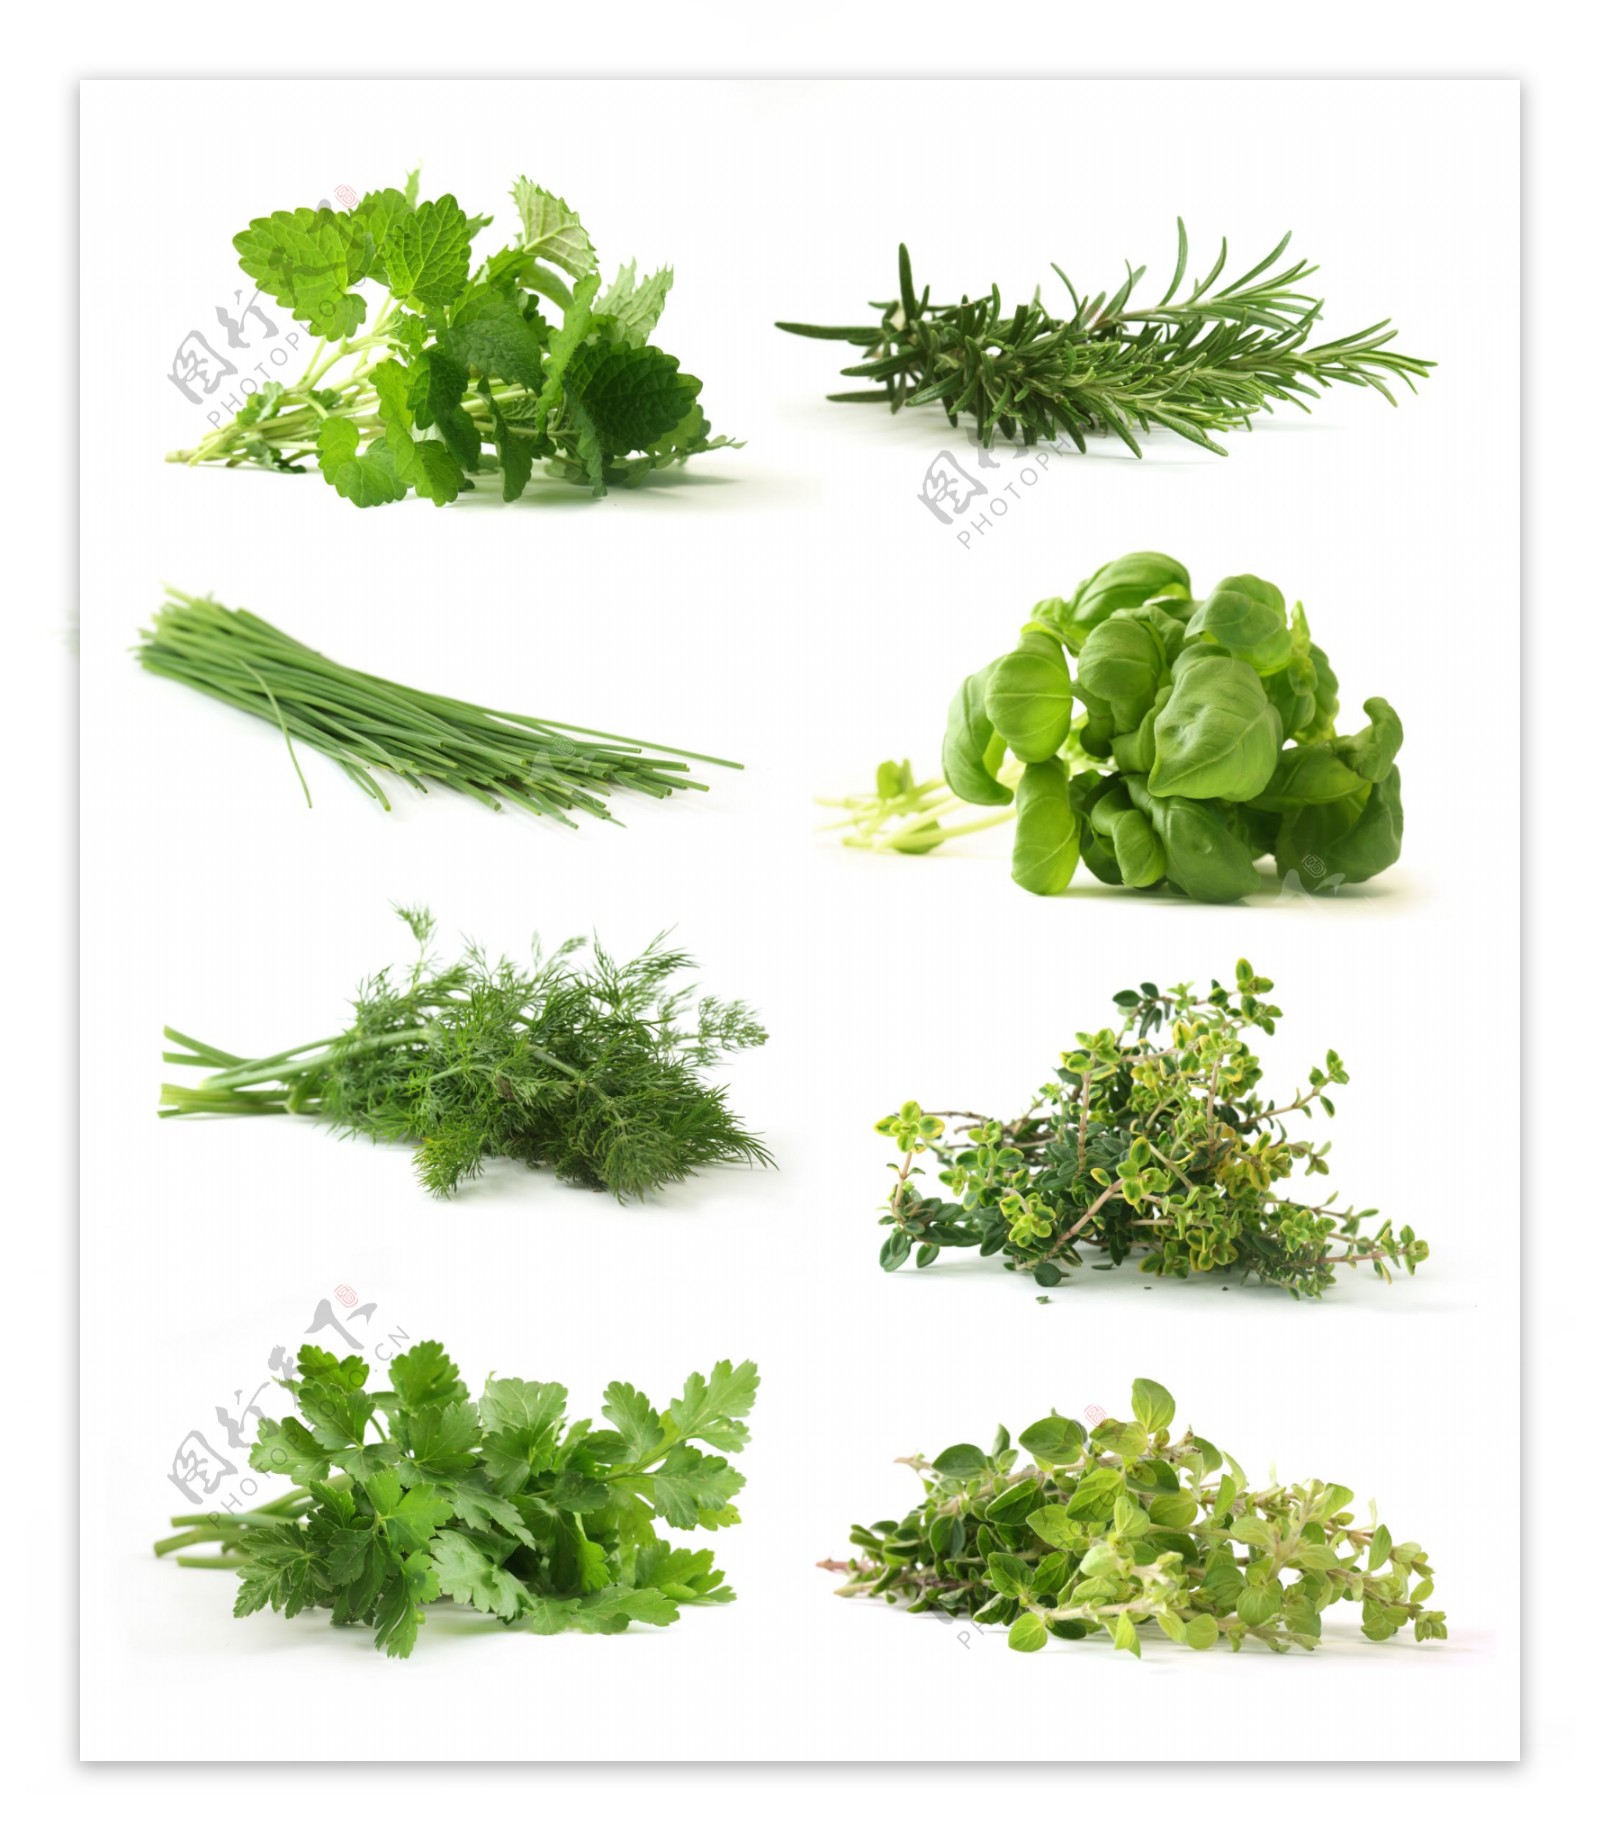 新鲜的绿叶蔬菜图片